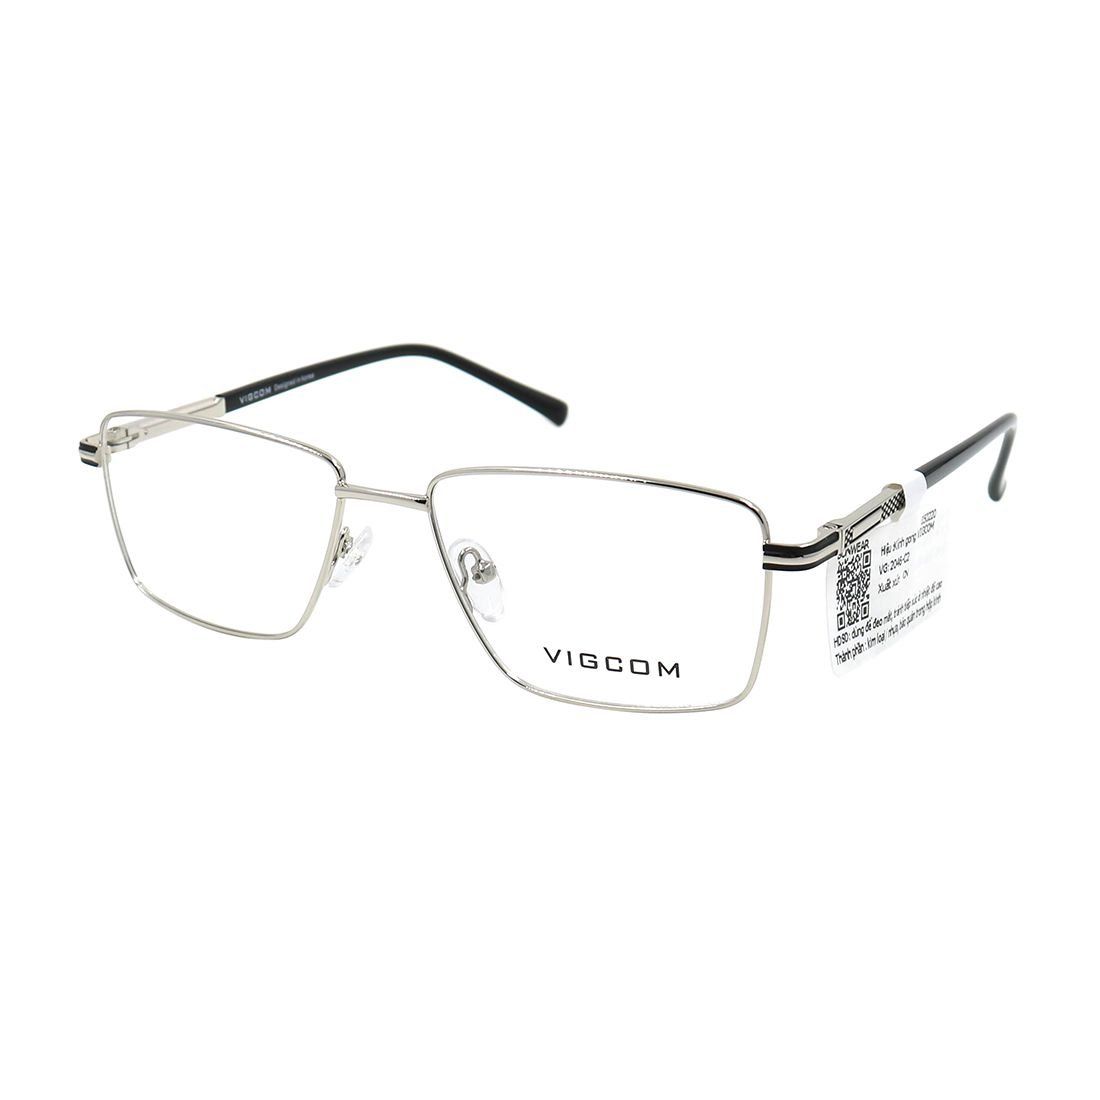  Gọng kính Vigcom VG2046  C2 